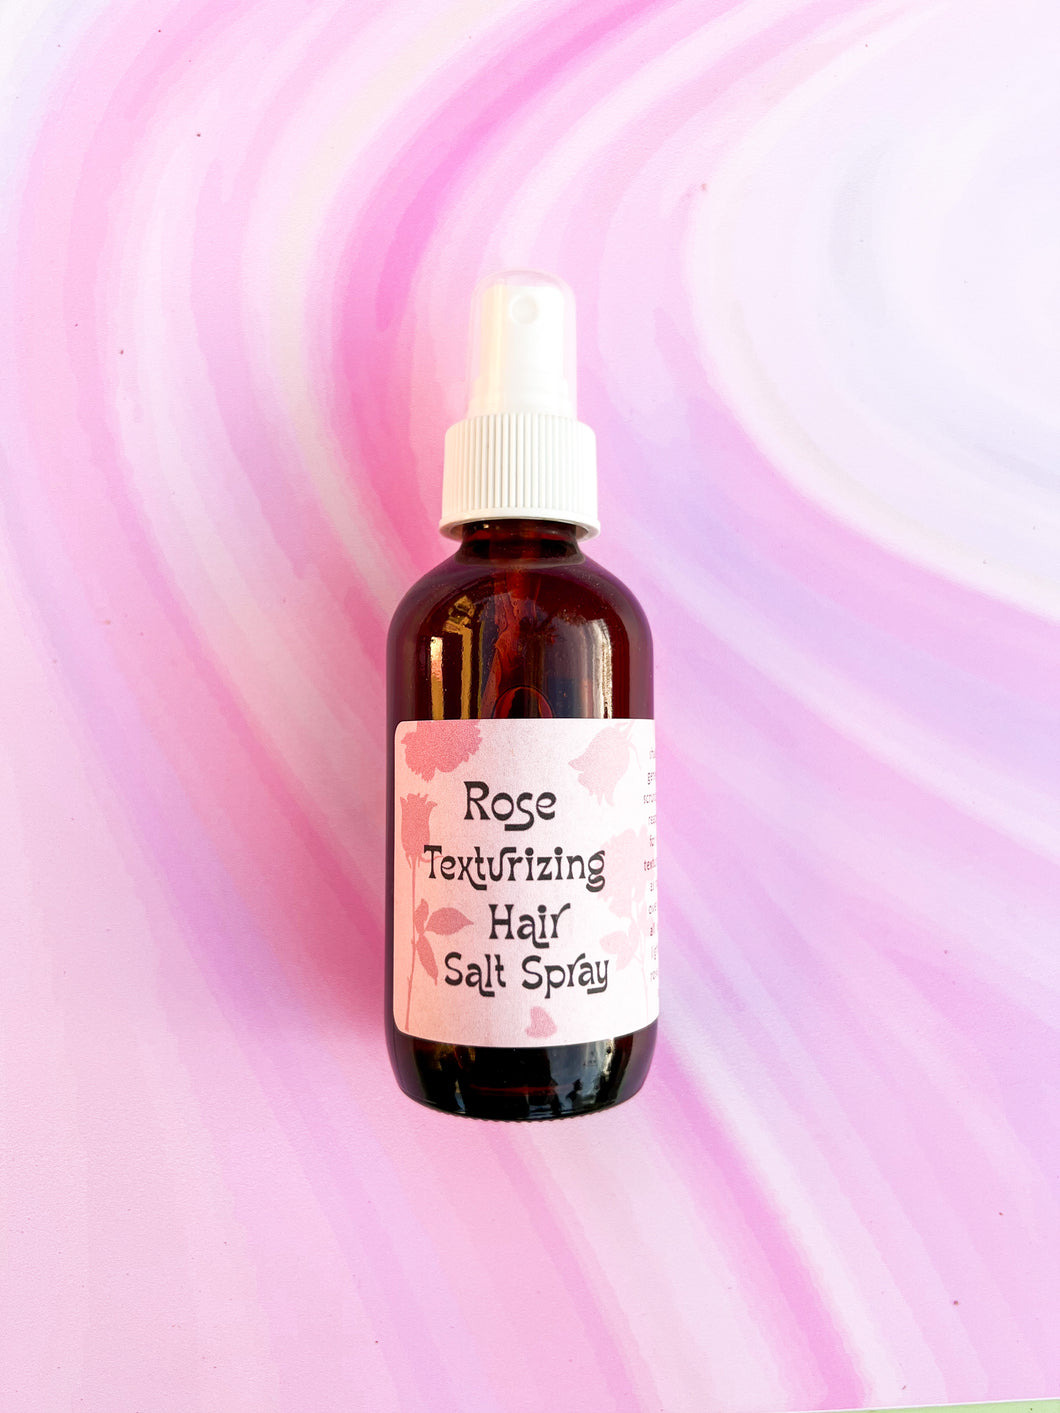 Rose Texturizing Hair Salt Spray